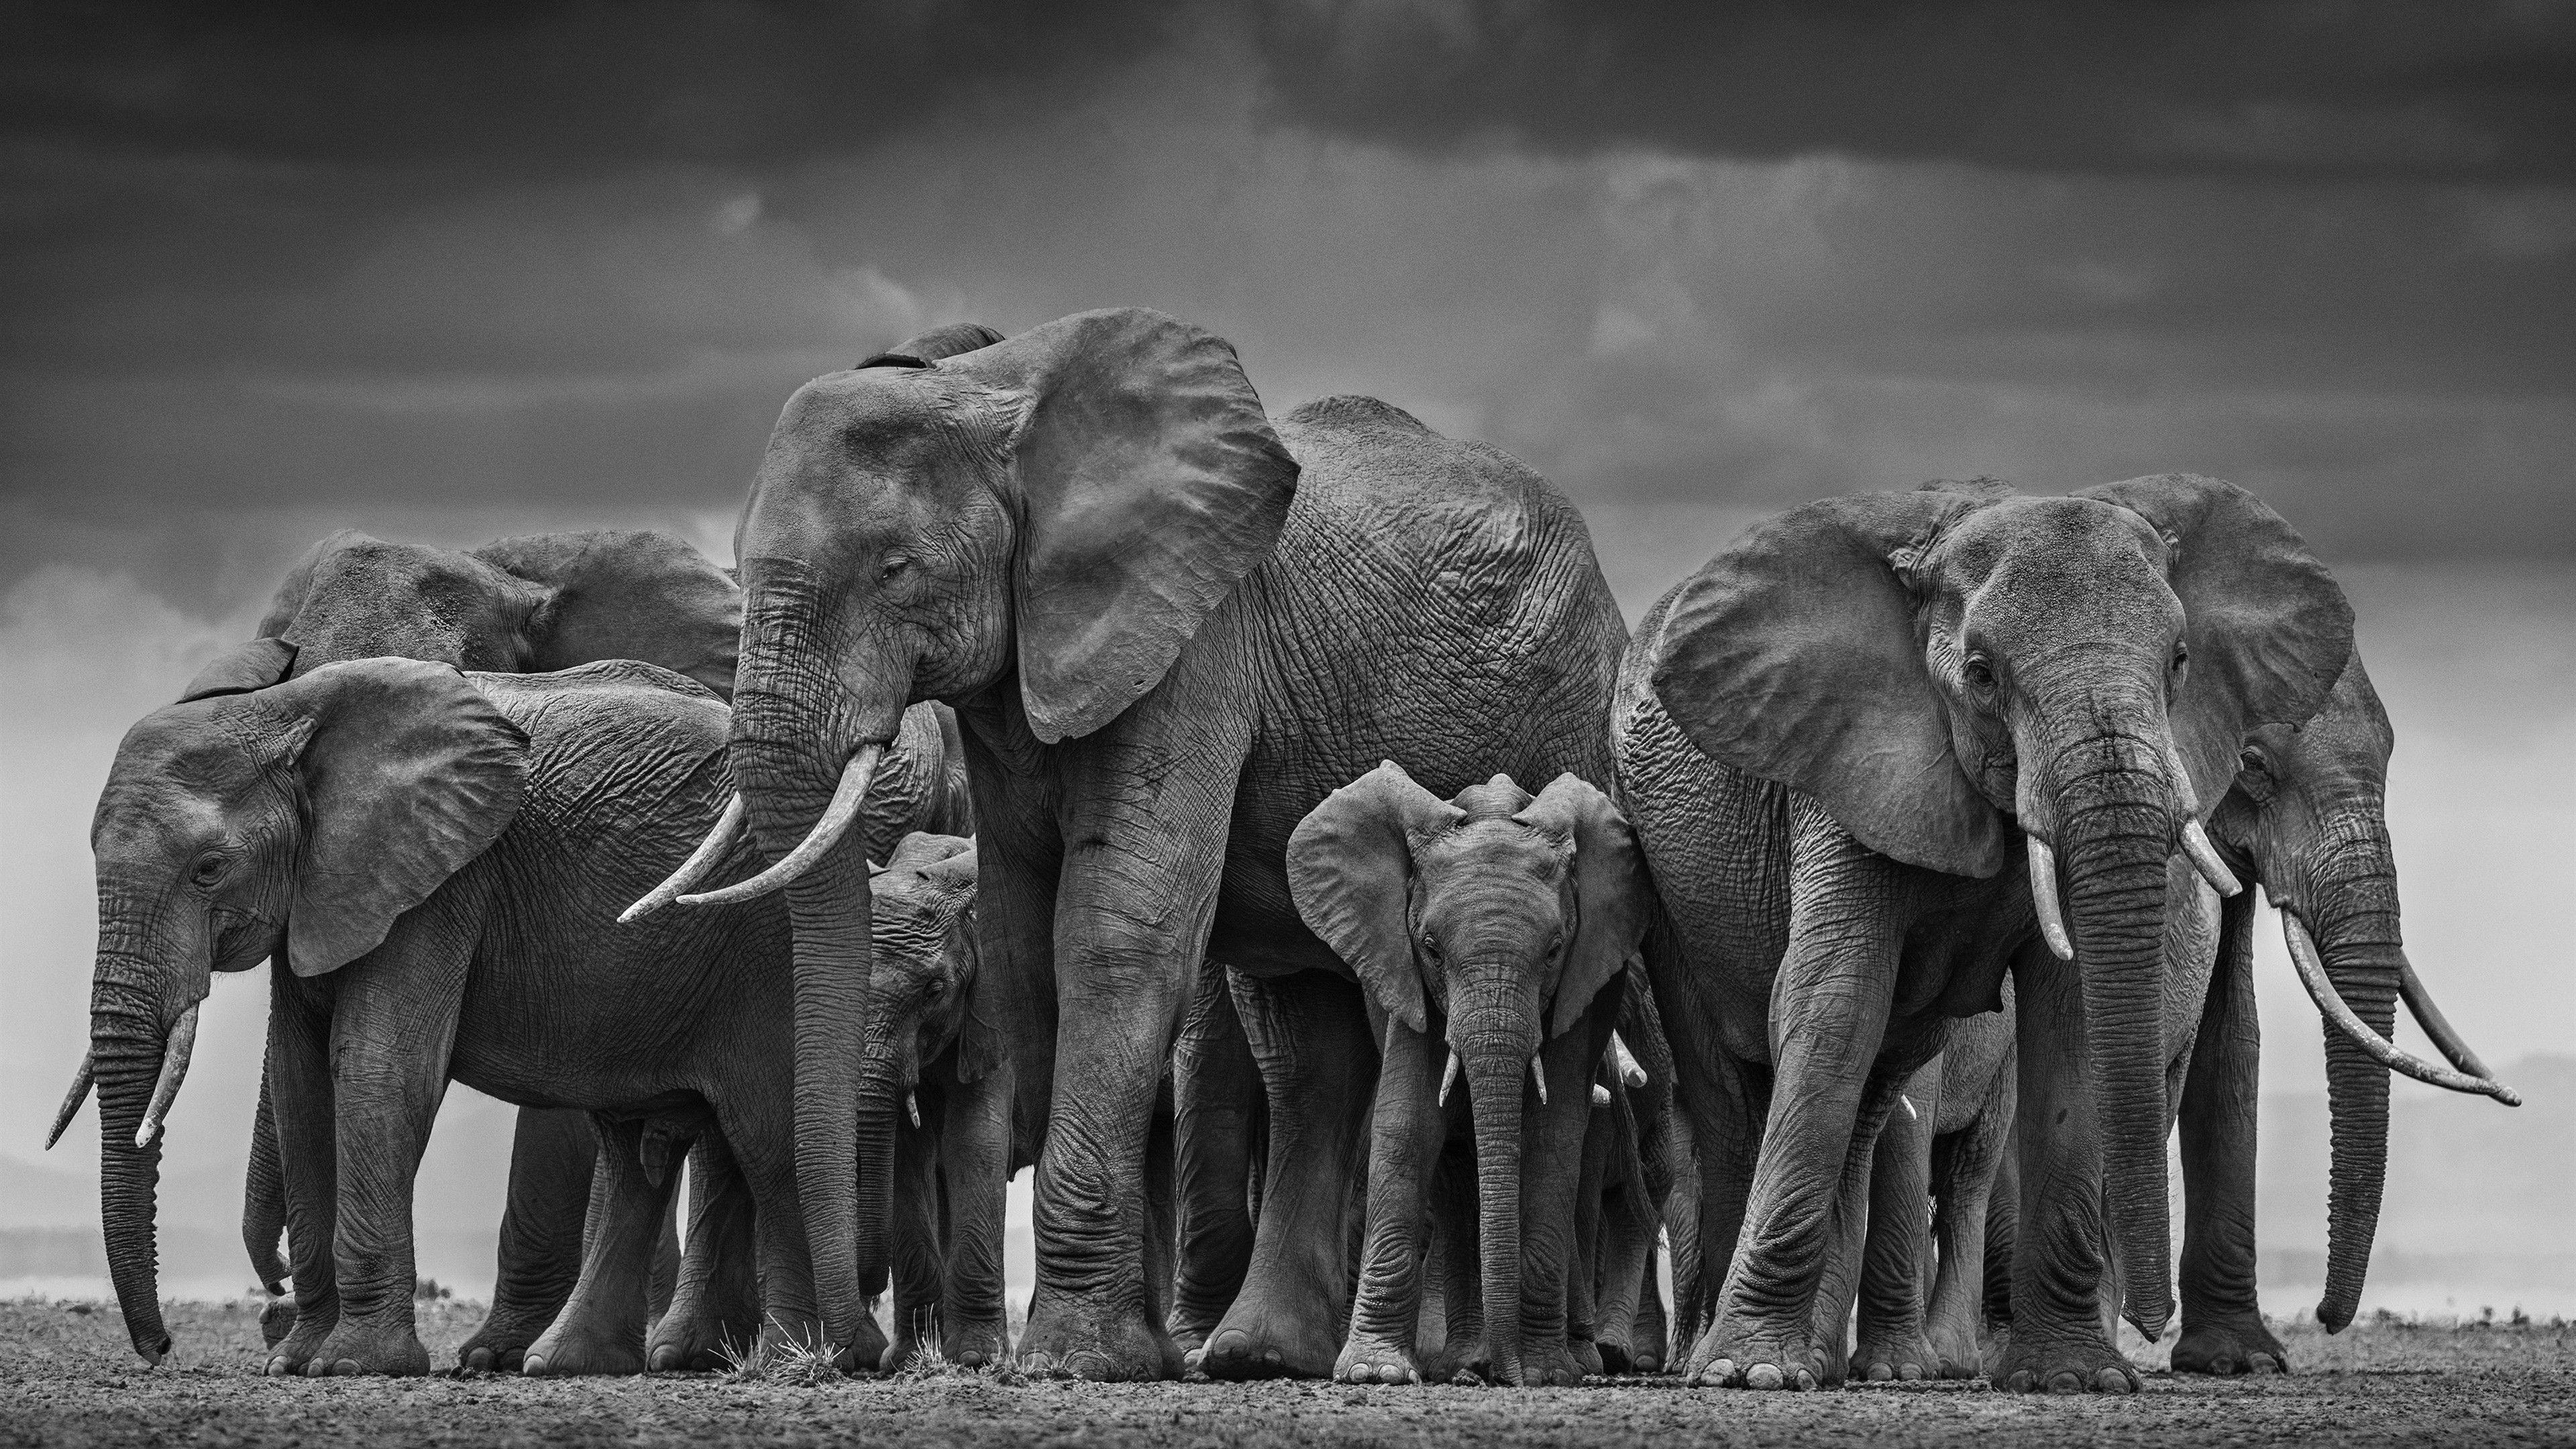 Elephants are big cats. Фотограф Дэвид Ярроу: «Дикие встречи». Фото природы Дэвида Ярроу. Африканский слон. Красивые слоны.